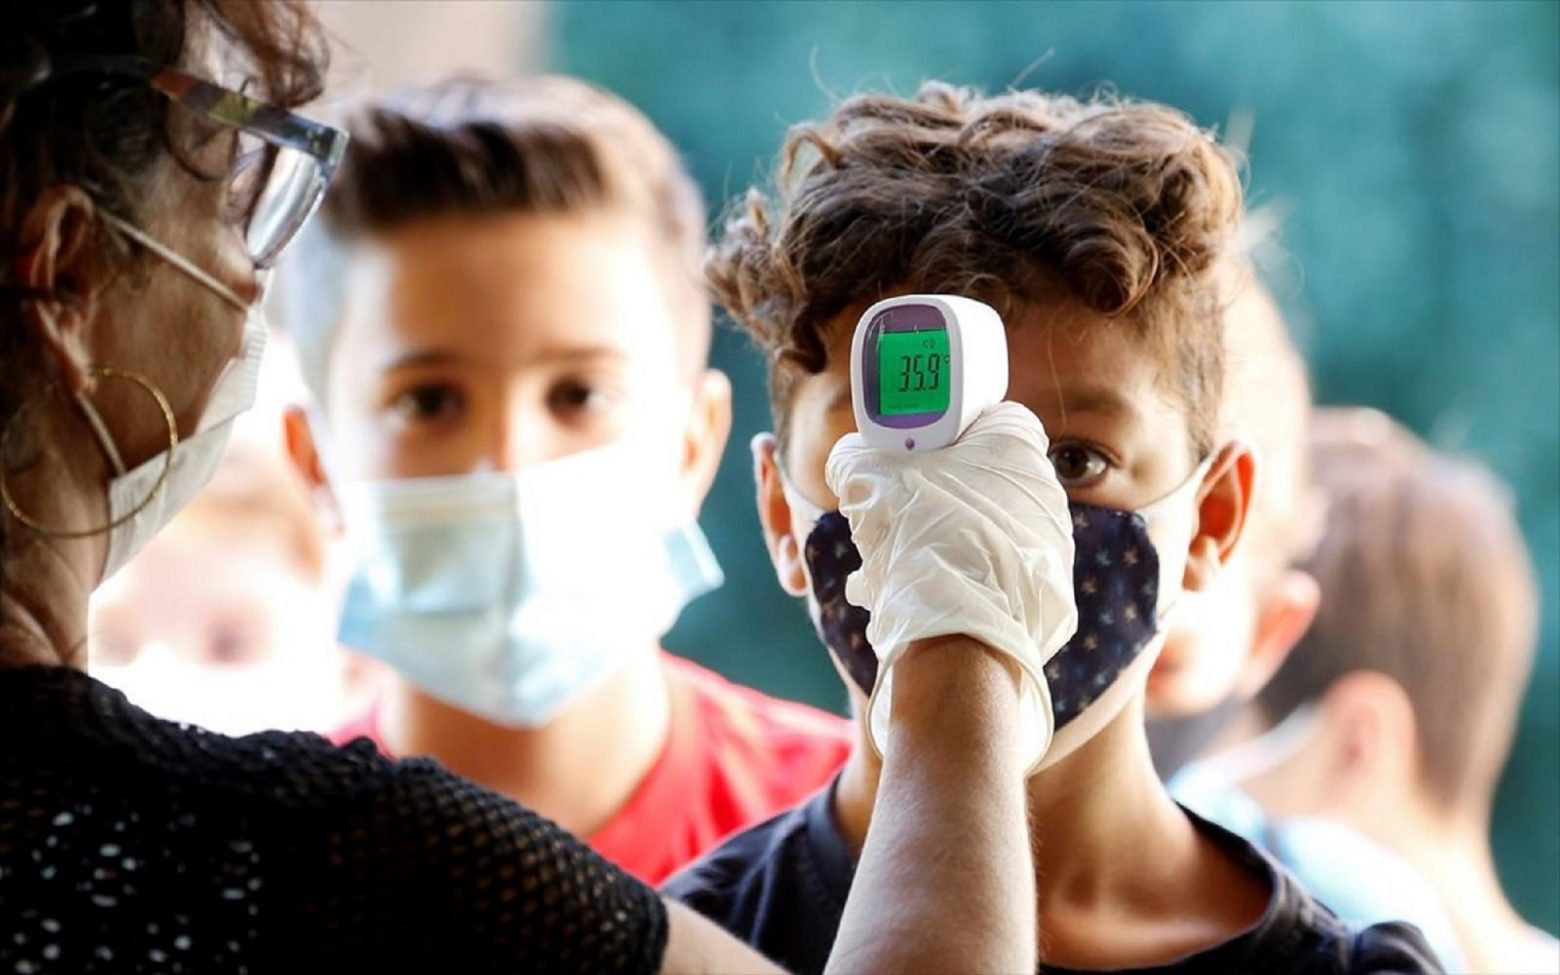 Ηπατίτιδα: Σε 5 ευρωπαϊκές χώρες επεκτάθηκε η μυστηριώδης επιδημία σε παιδιά – Τι ανακοίνωσε το ECDC